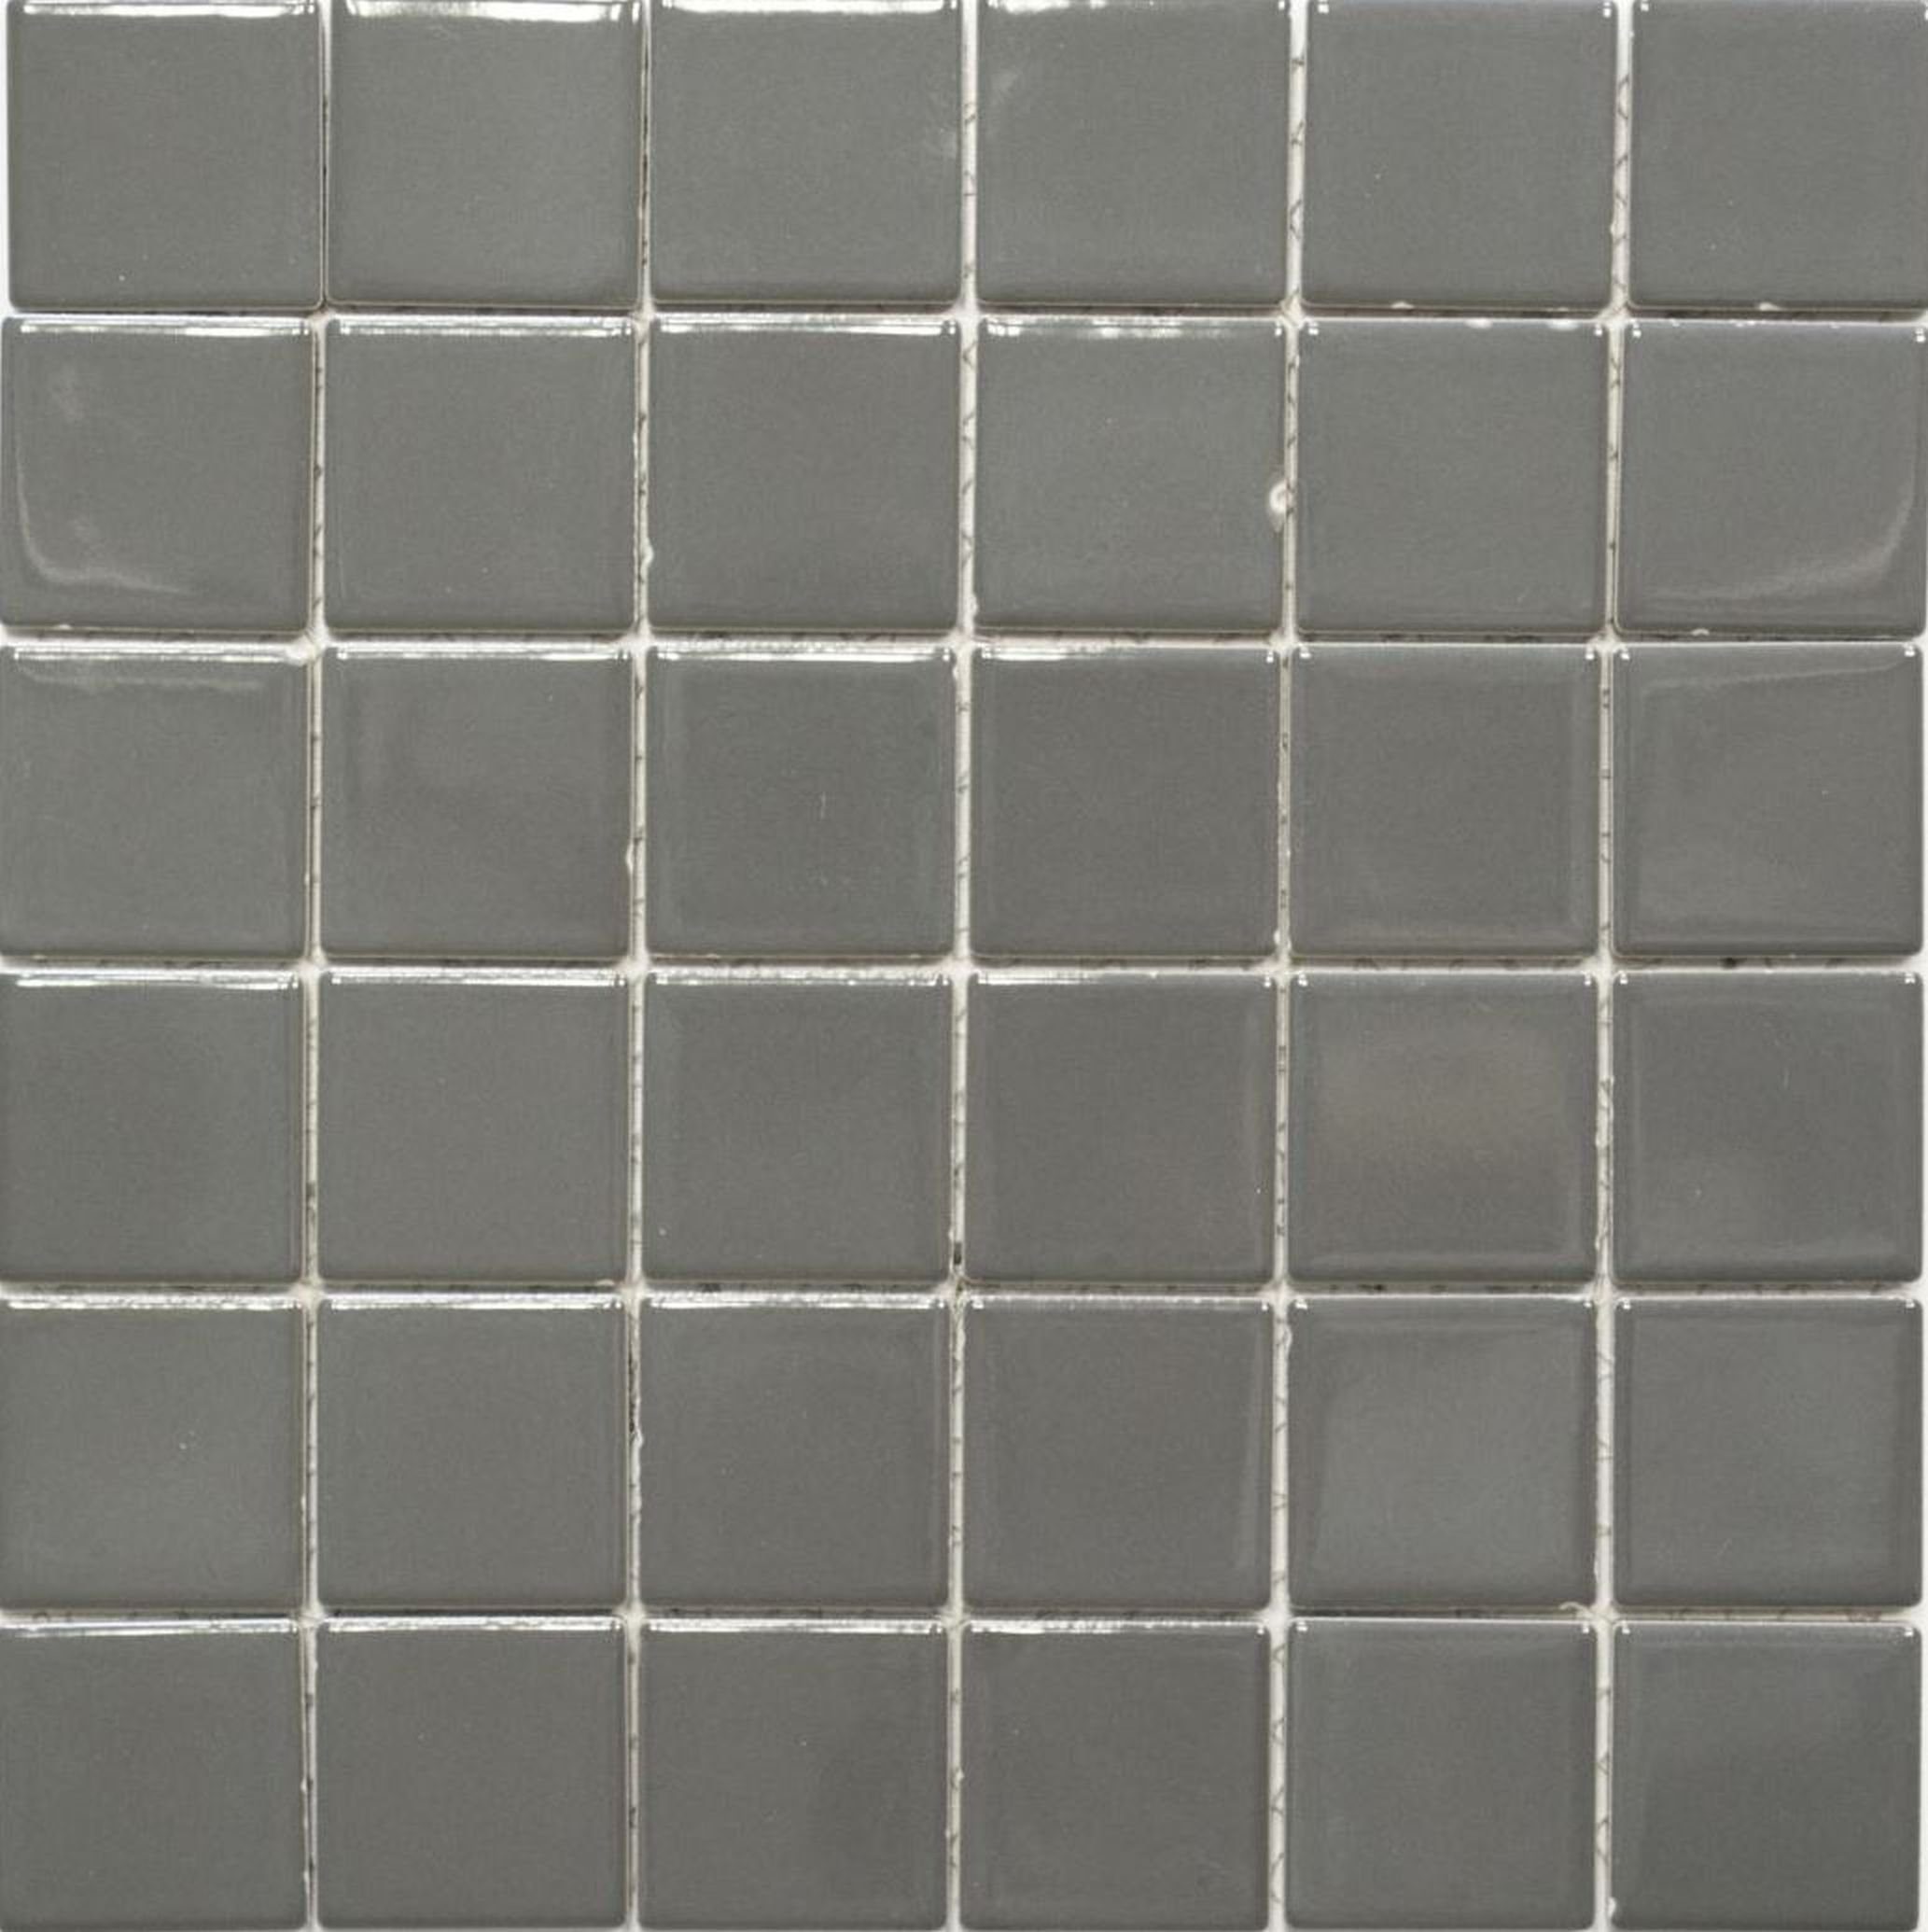 Mosani Mosaikfliesen Keramik Mosaik Fliese metall grau glänzend Fliesenspiegel Küchenwand